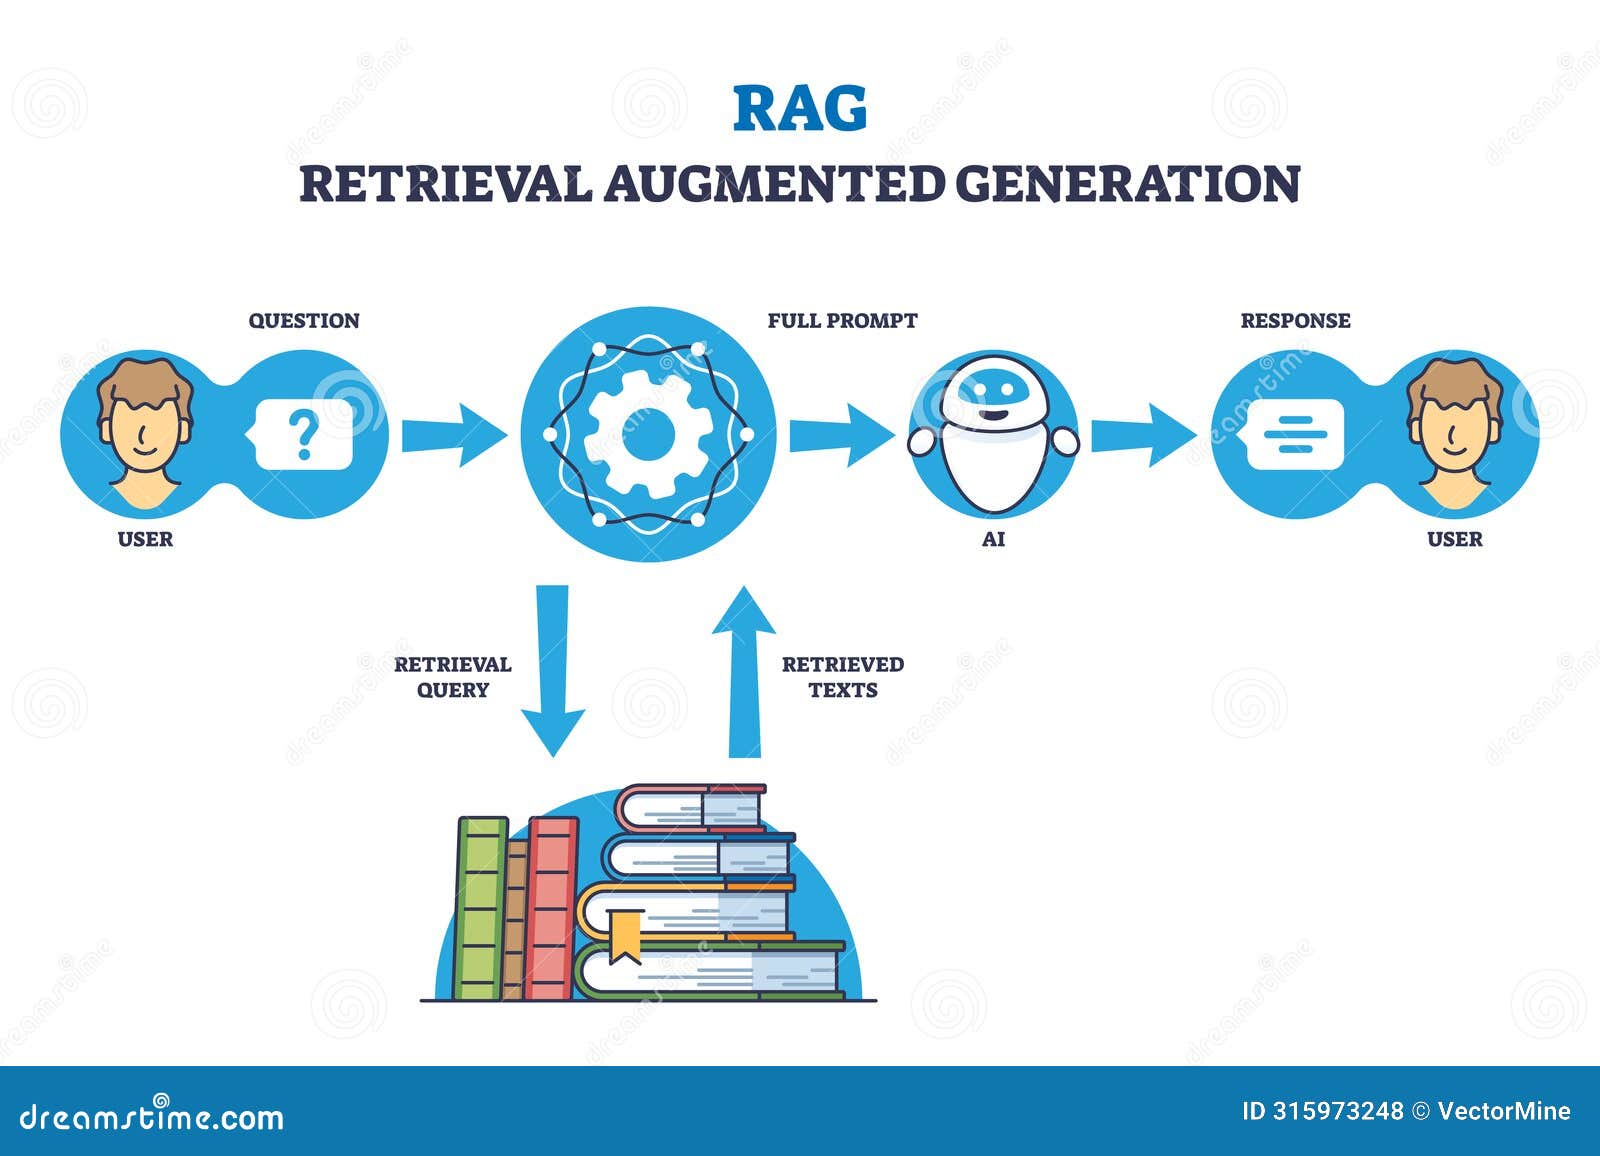 rag or retrieval augmented generation for precise response outline diagram